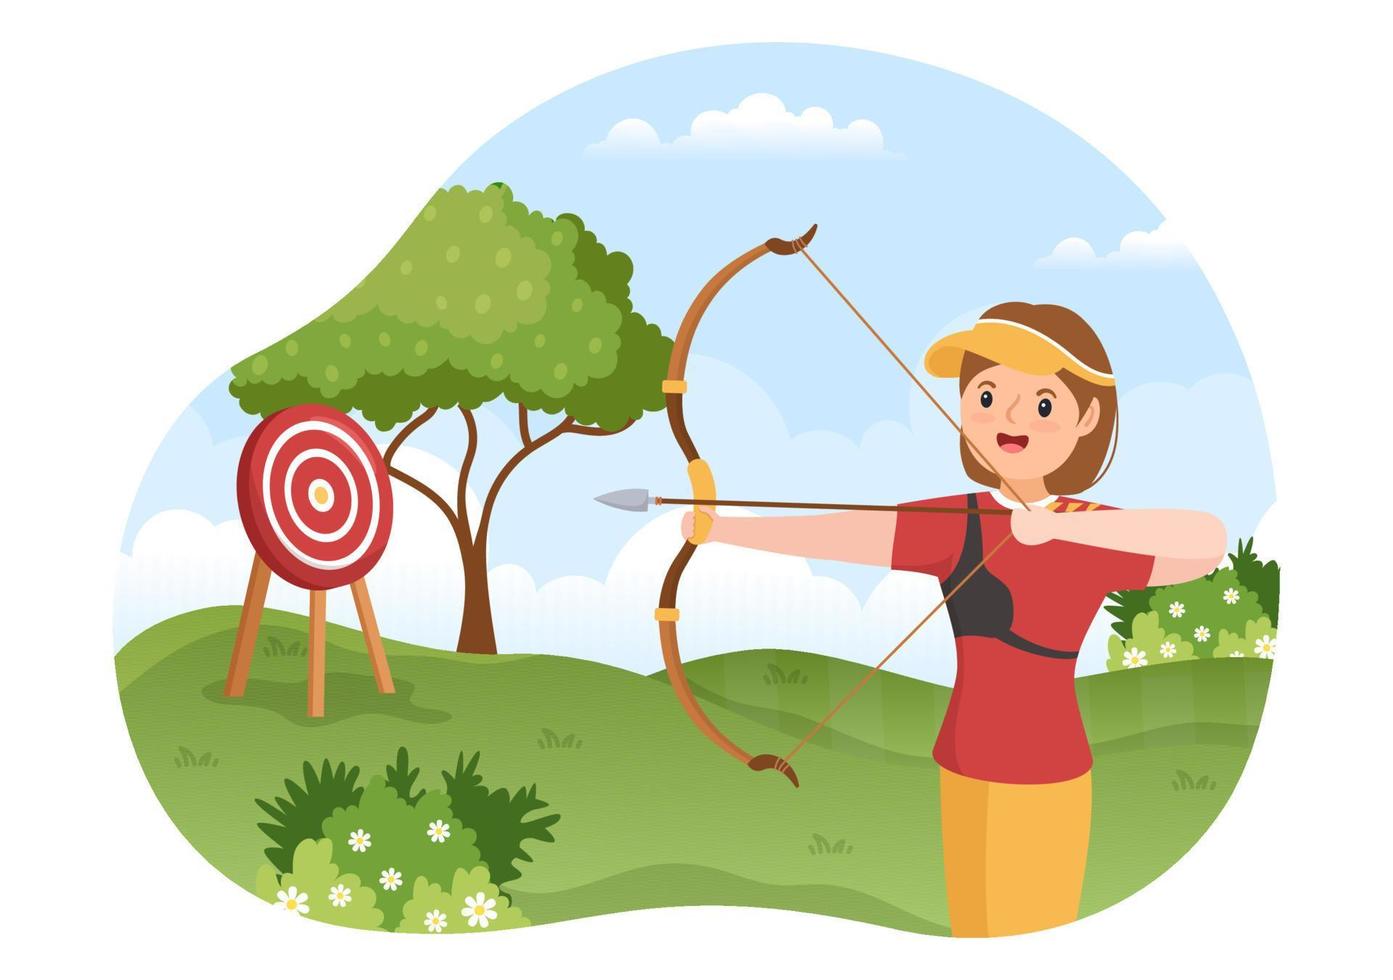 esporte de arco e flecha com arco e flecha apontando para o alvo para atividade recreativa ao ar livre em ilustração de modelo desenhado à mão plana dos desenhos animados vetor